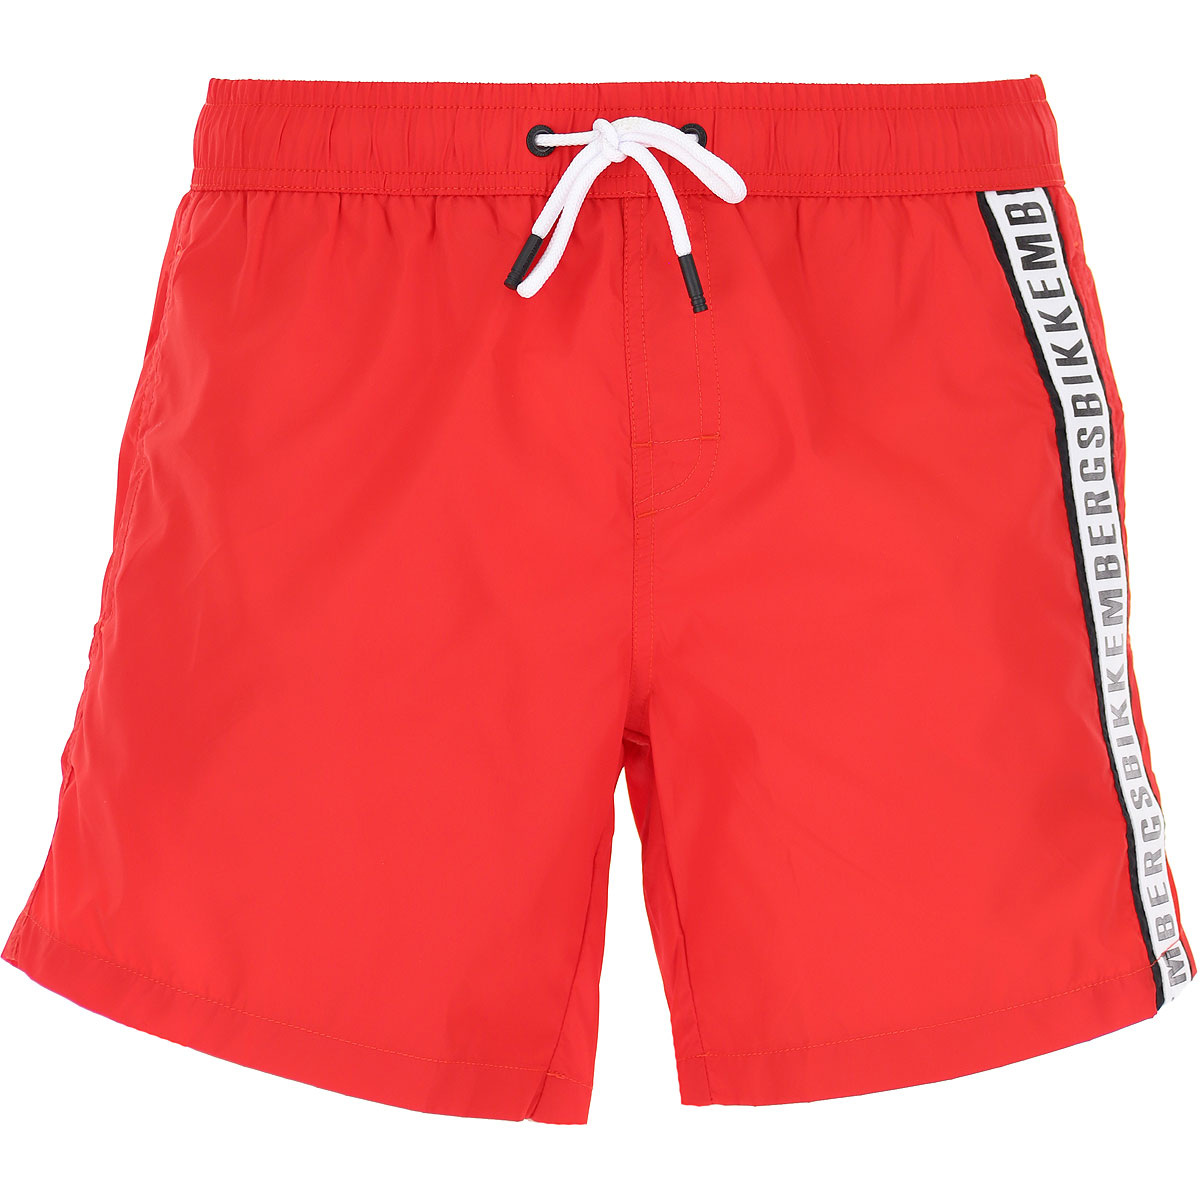 Mens Swimwear Bikkembergs, Style code: bkk1mbs02-red-